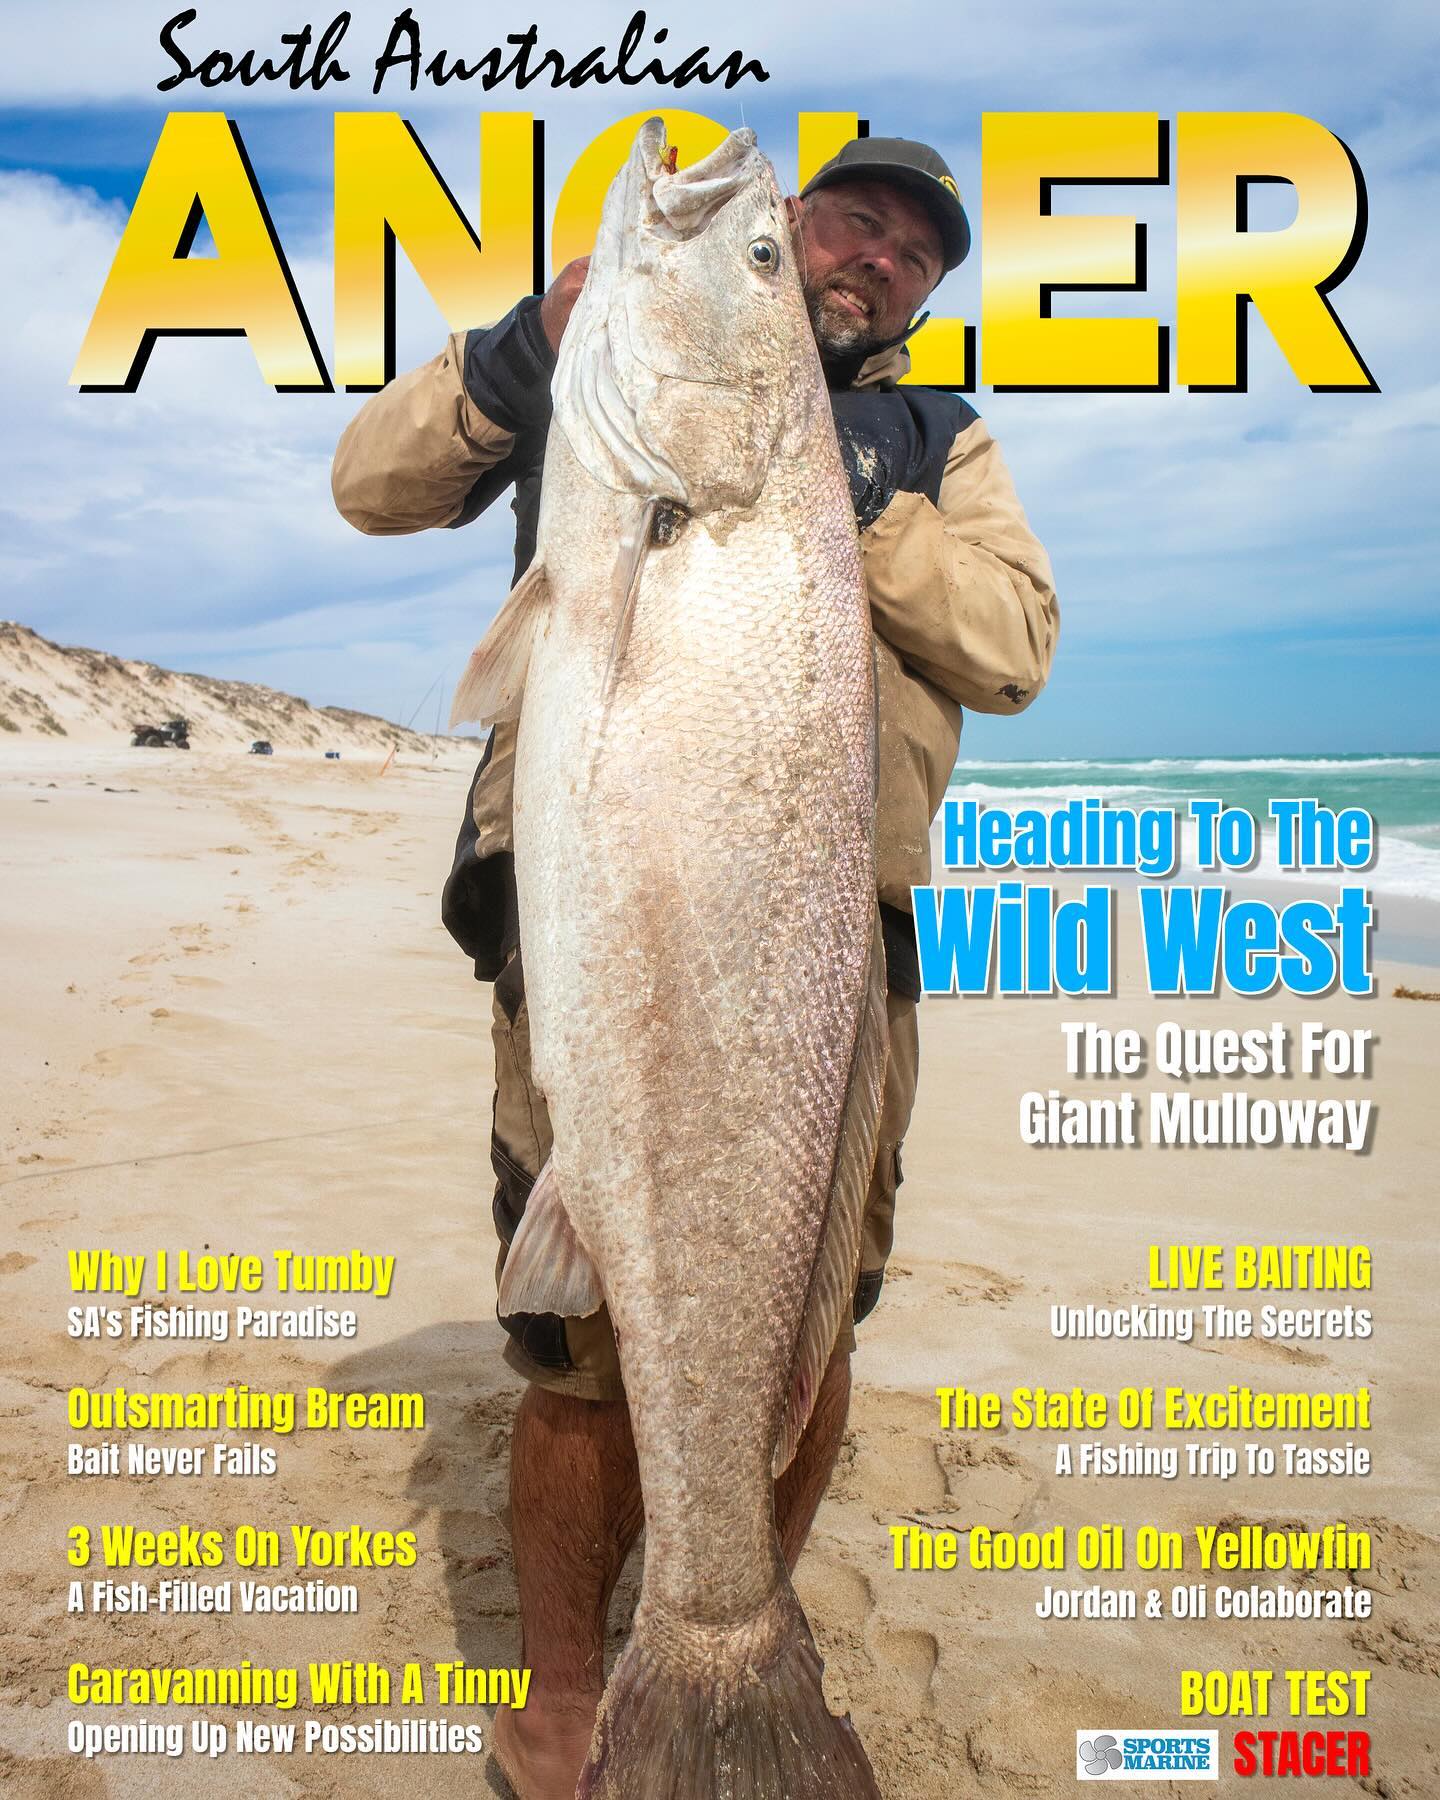 Home - SA Angler - South Australian Angler Magazine